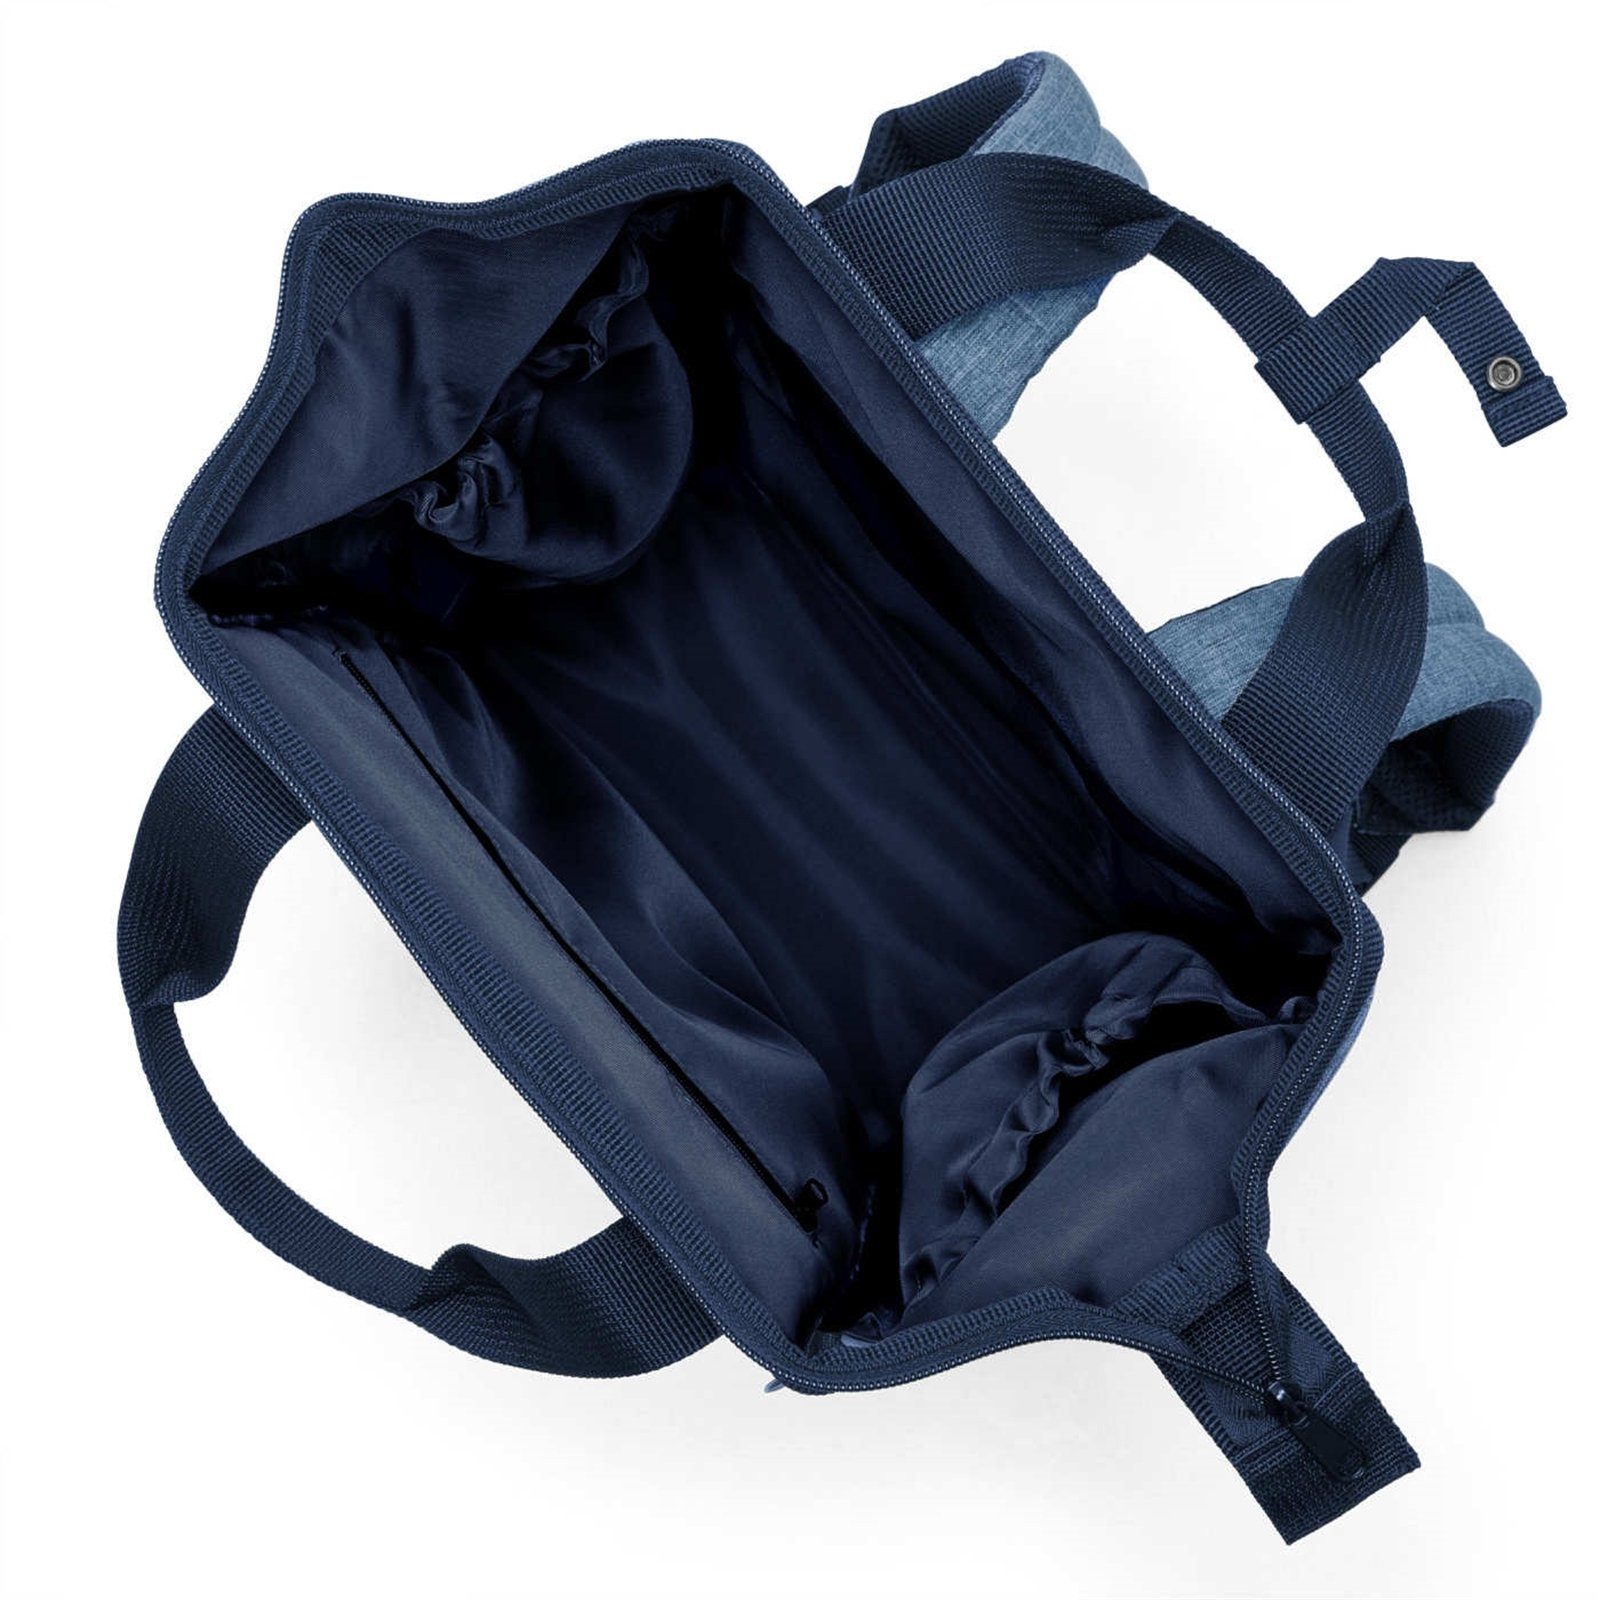 REISENTHEL® Reisetasche blue allrounder twist R Handtasche